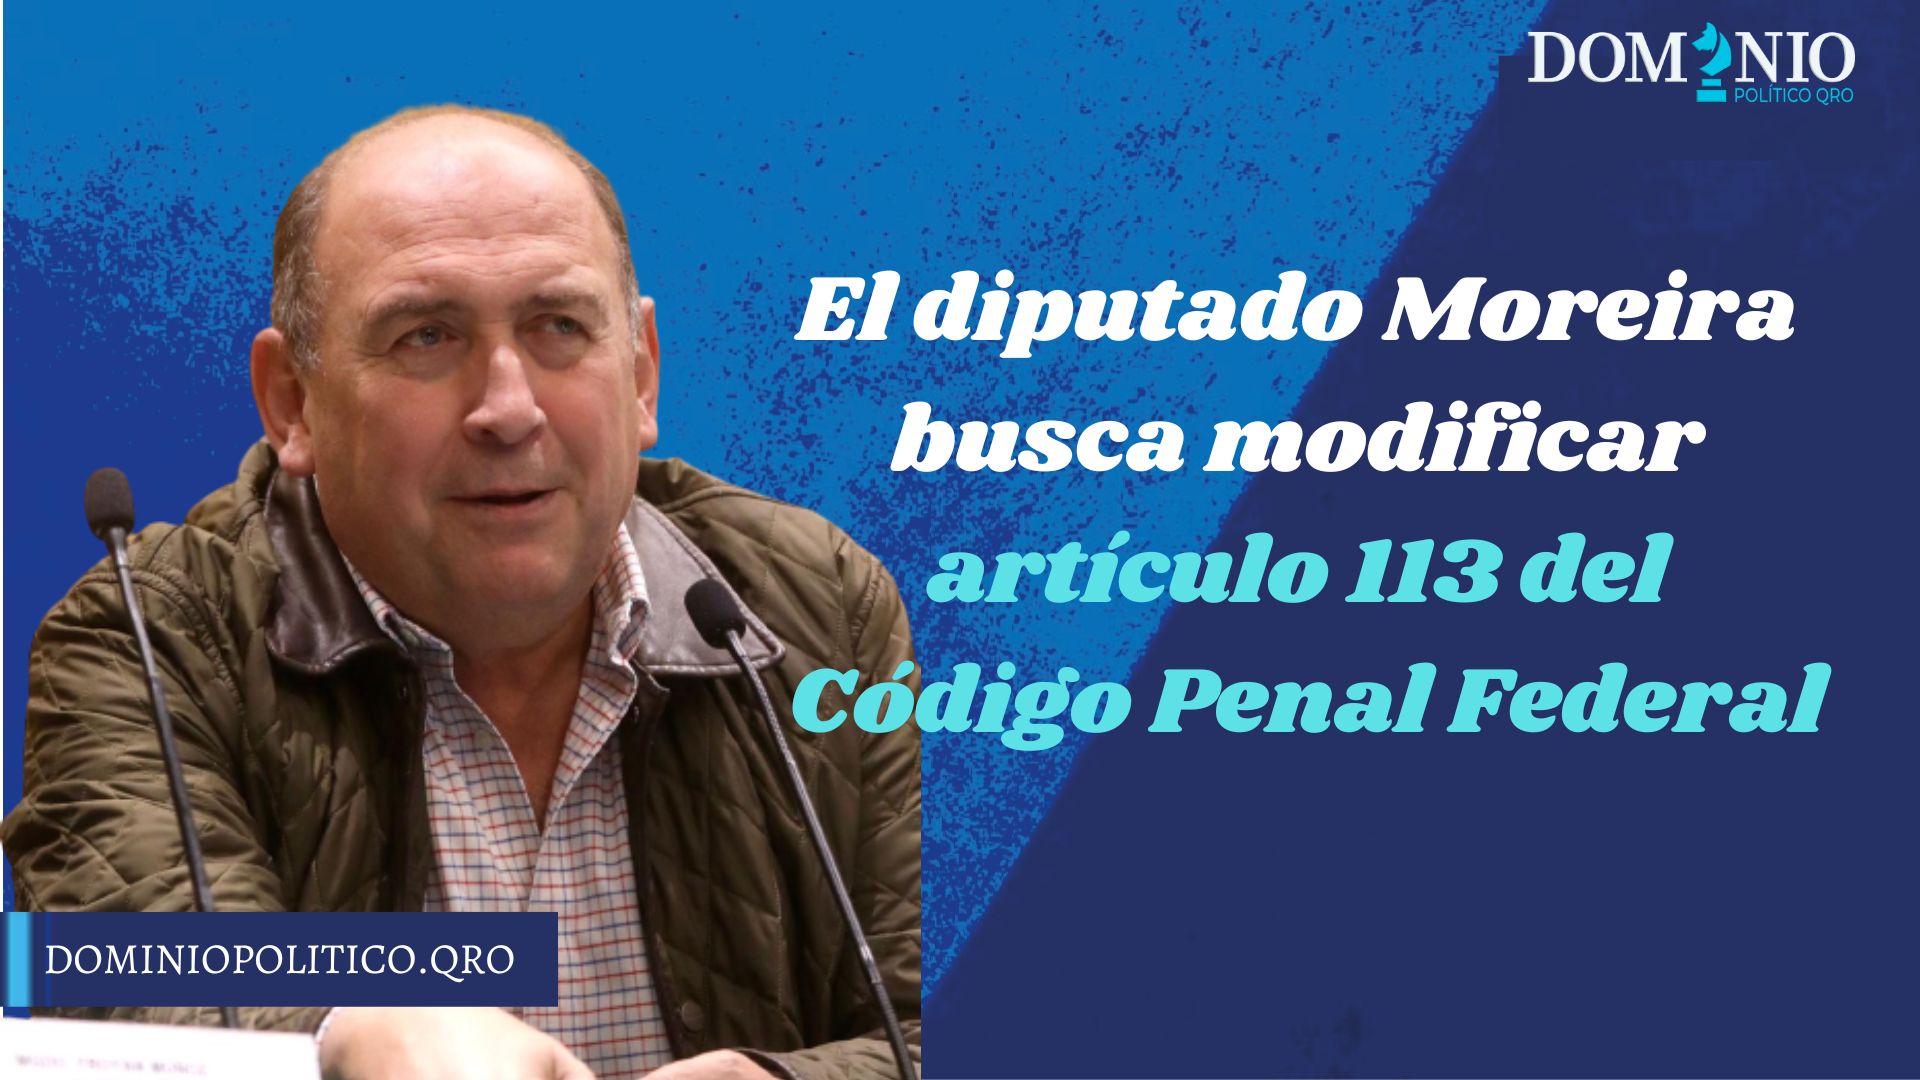 El diputado Moreira busca modificar el artículo 113 del Código Penal Federal